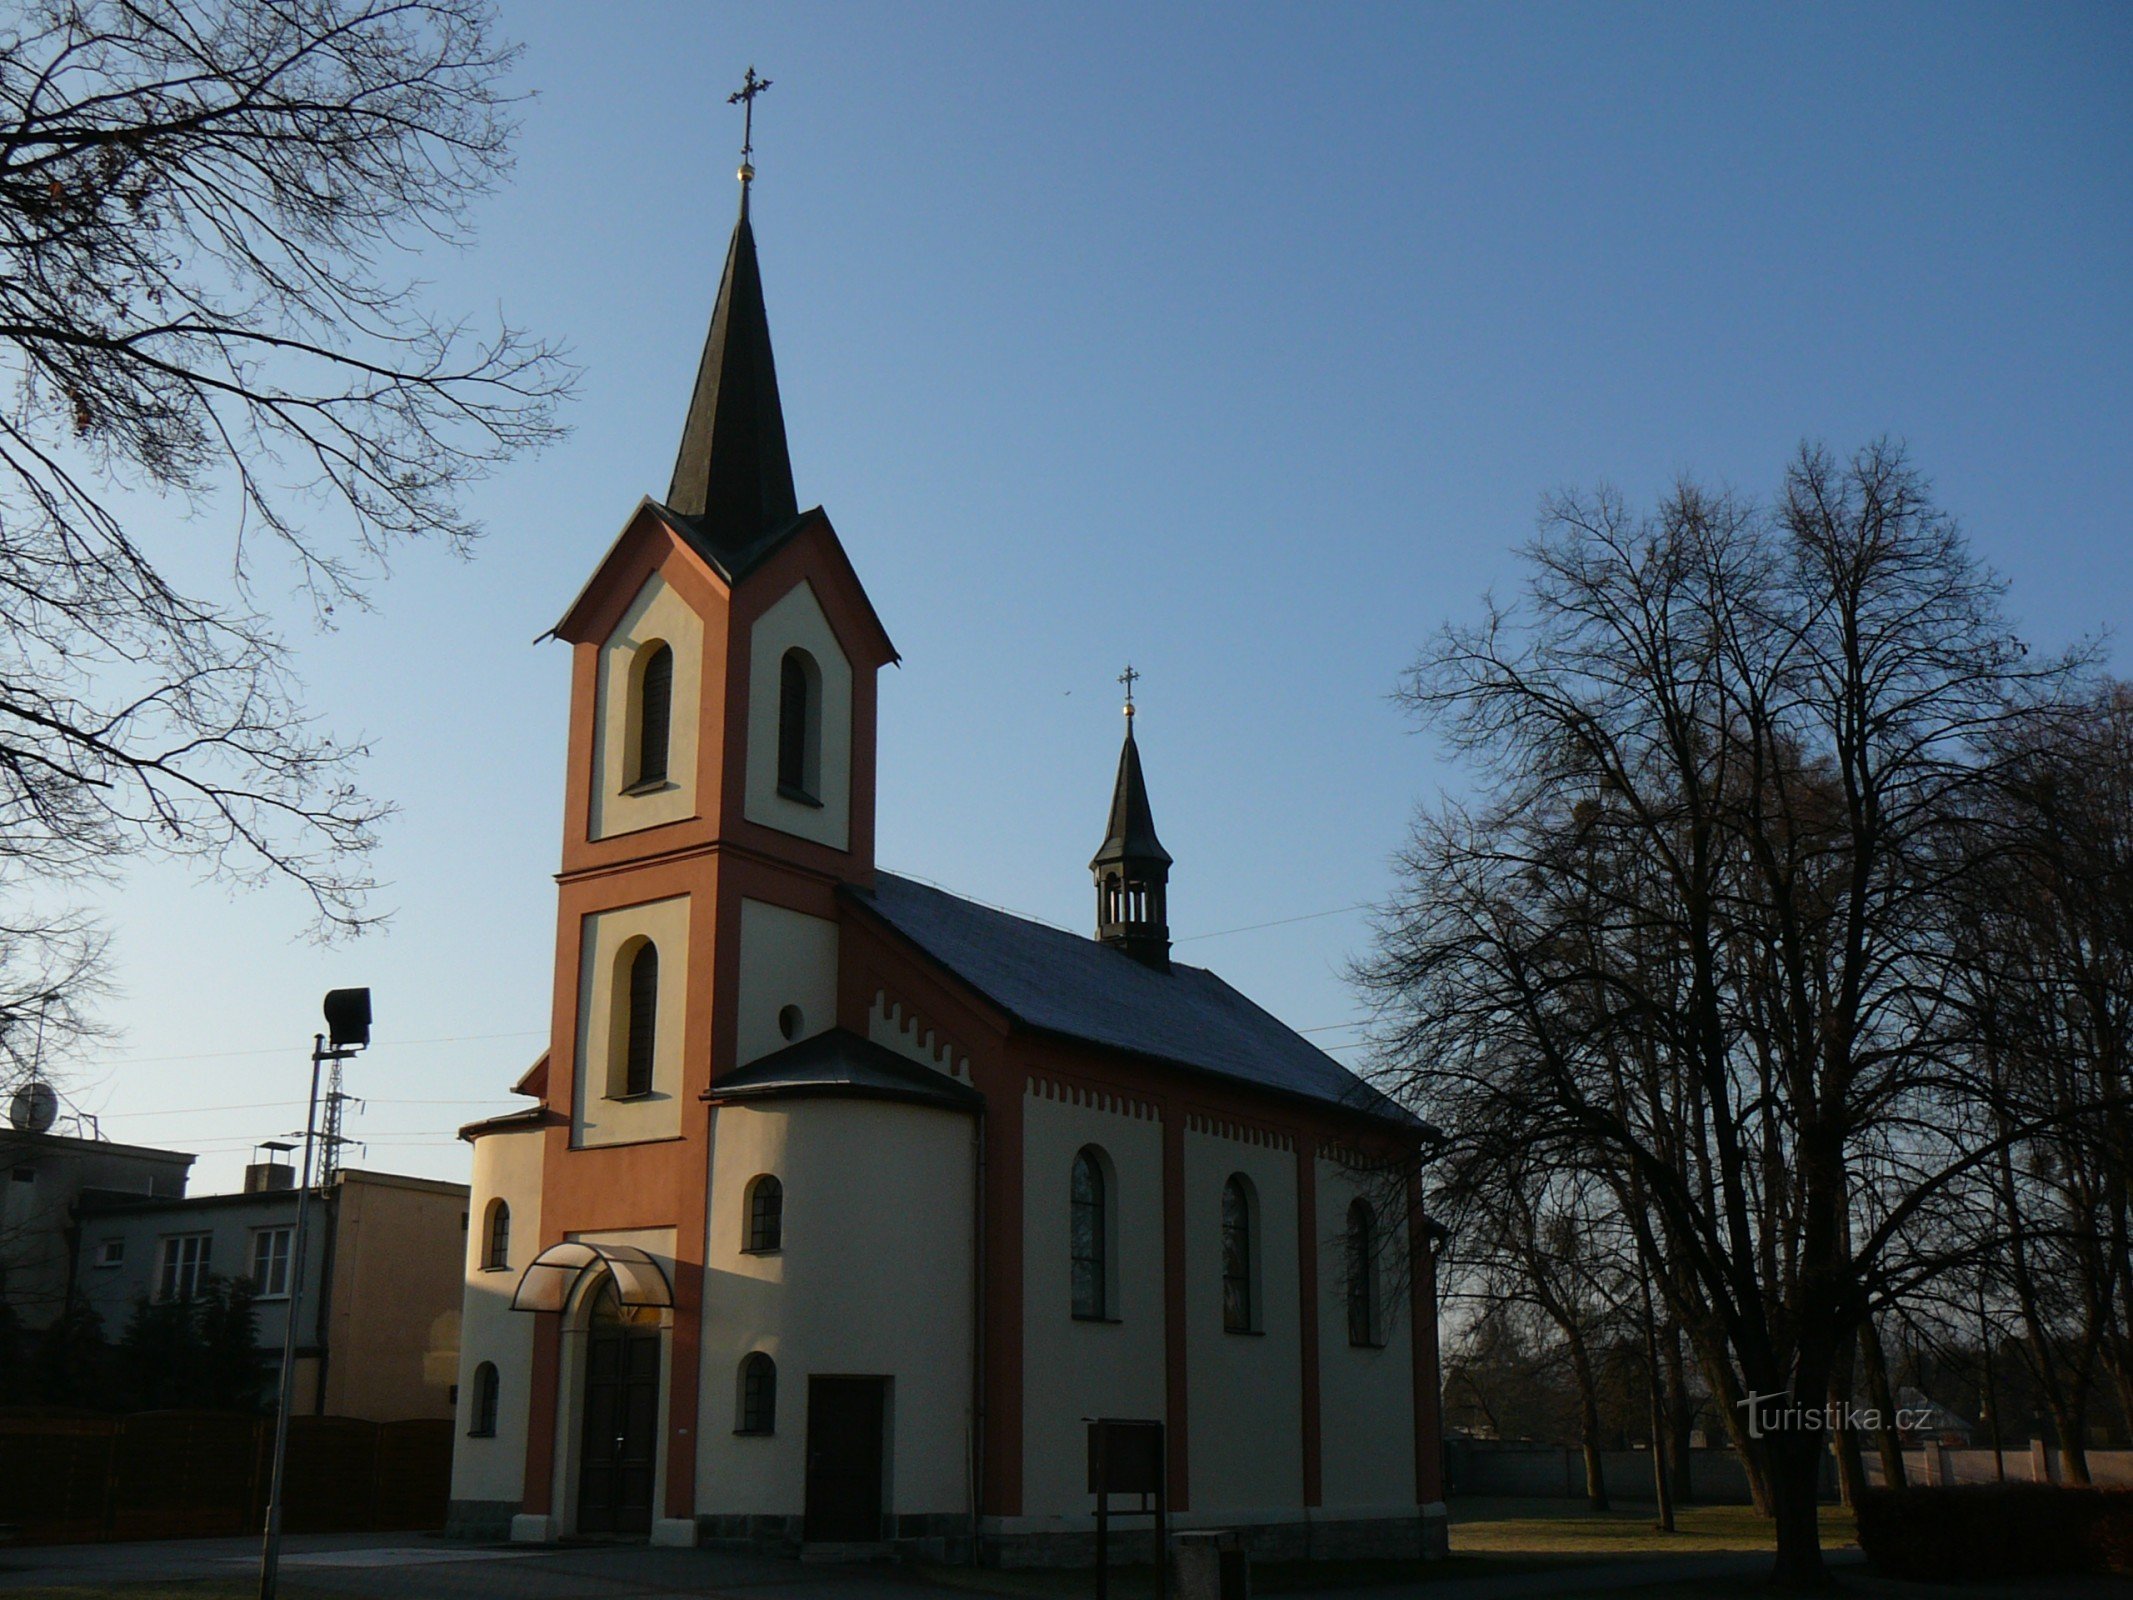 chapel of St. John of Nepomuk in Sviadnov